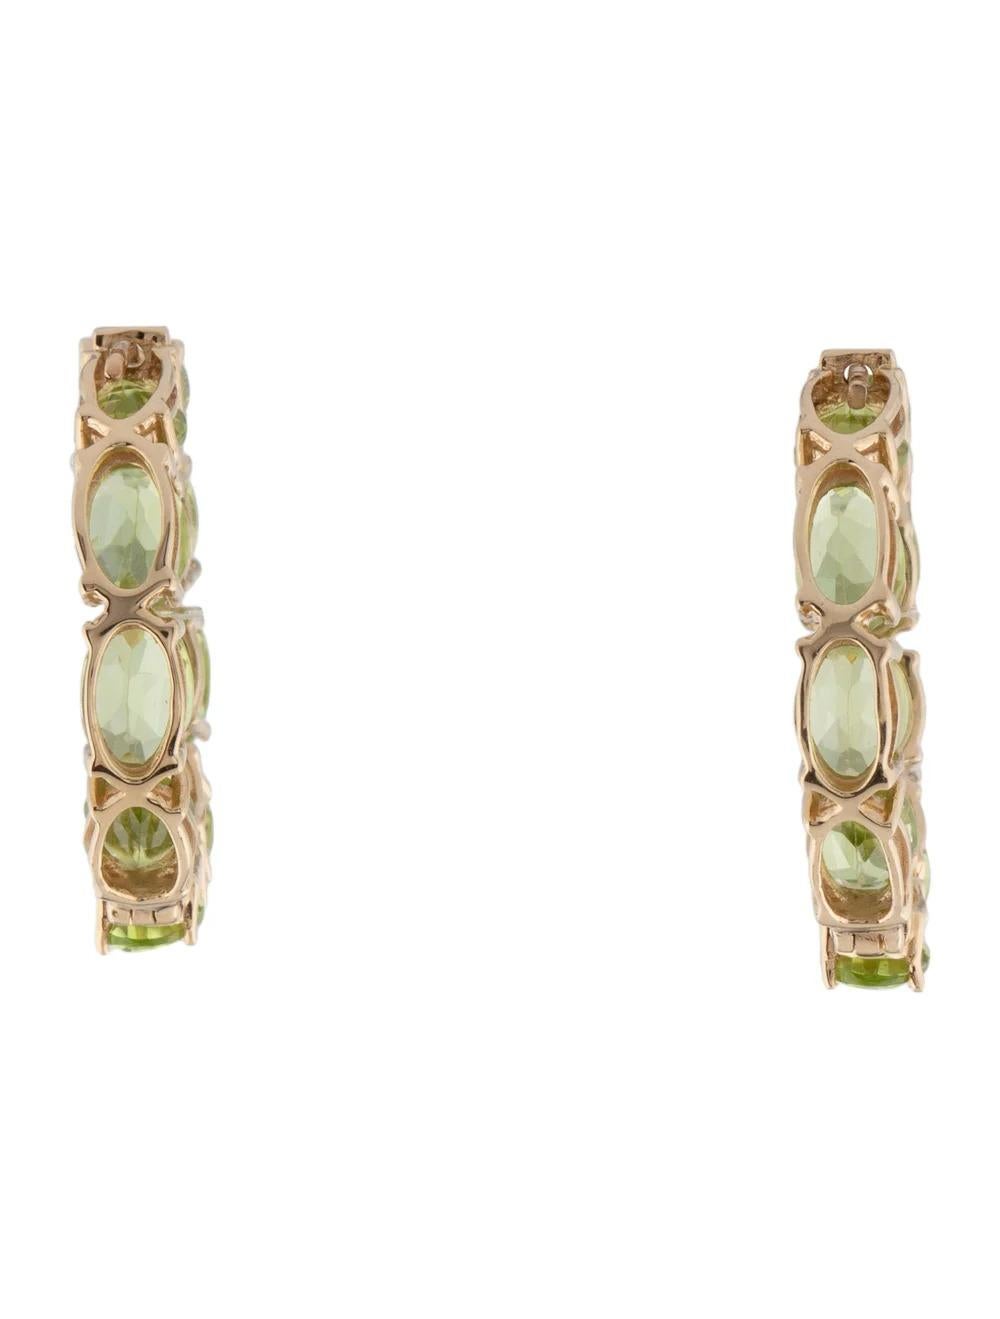 Oval Cut Designer 14K Peridot Inside-Out Hoop Earrings, 9.03ctw, Green Gemstone Jewelry